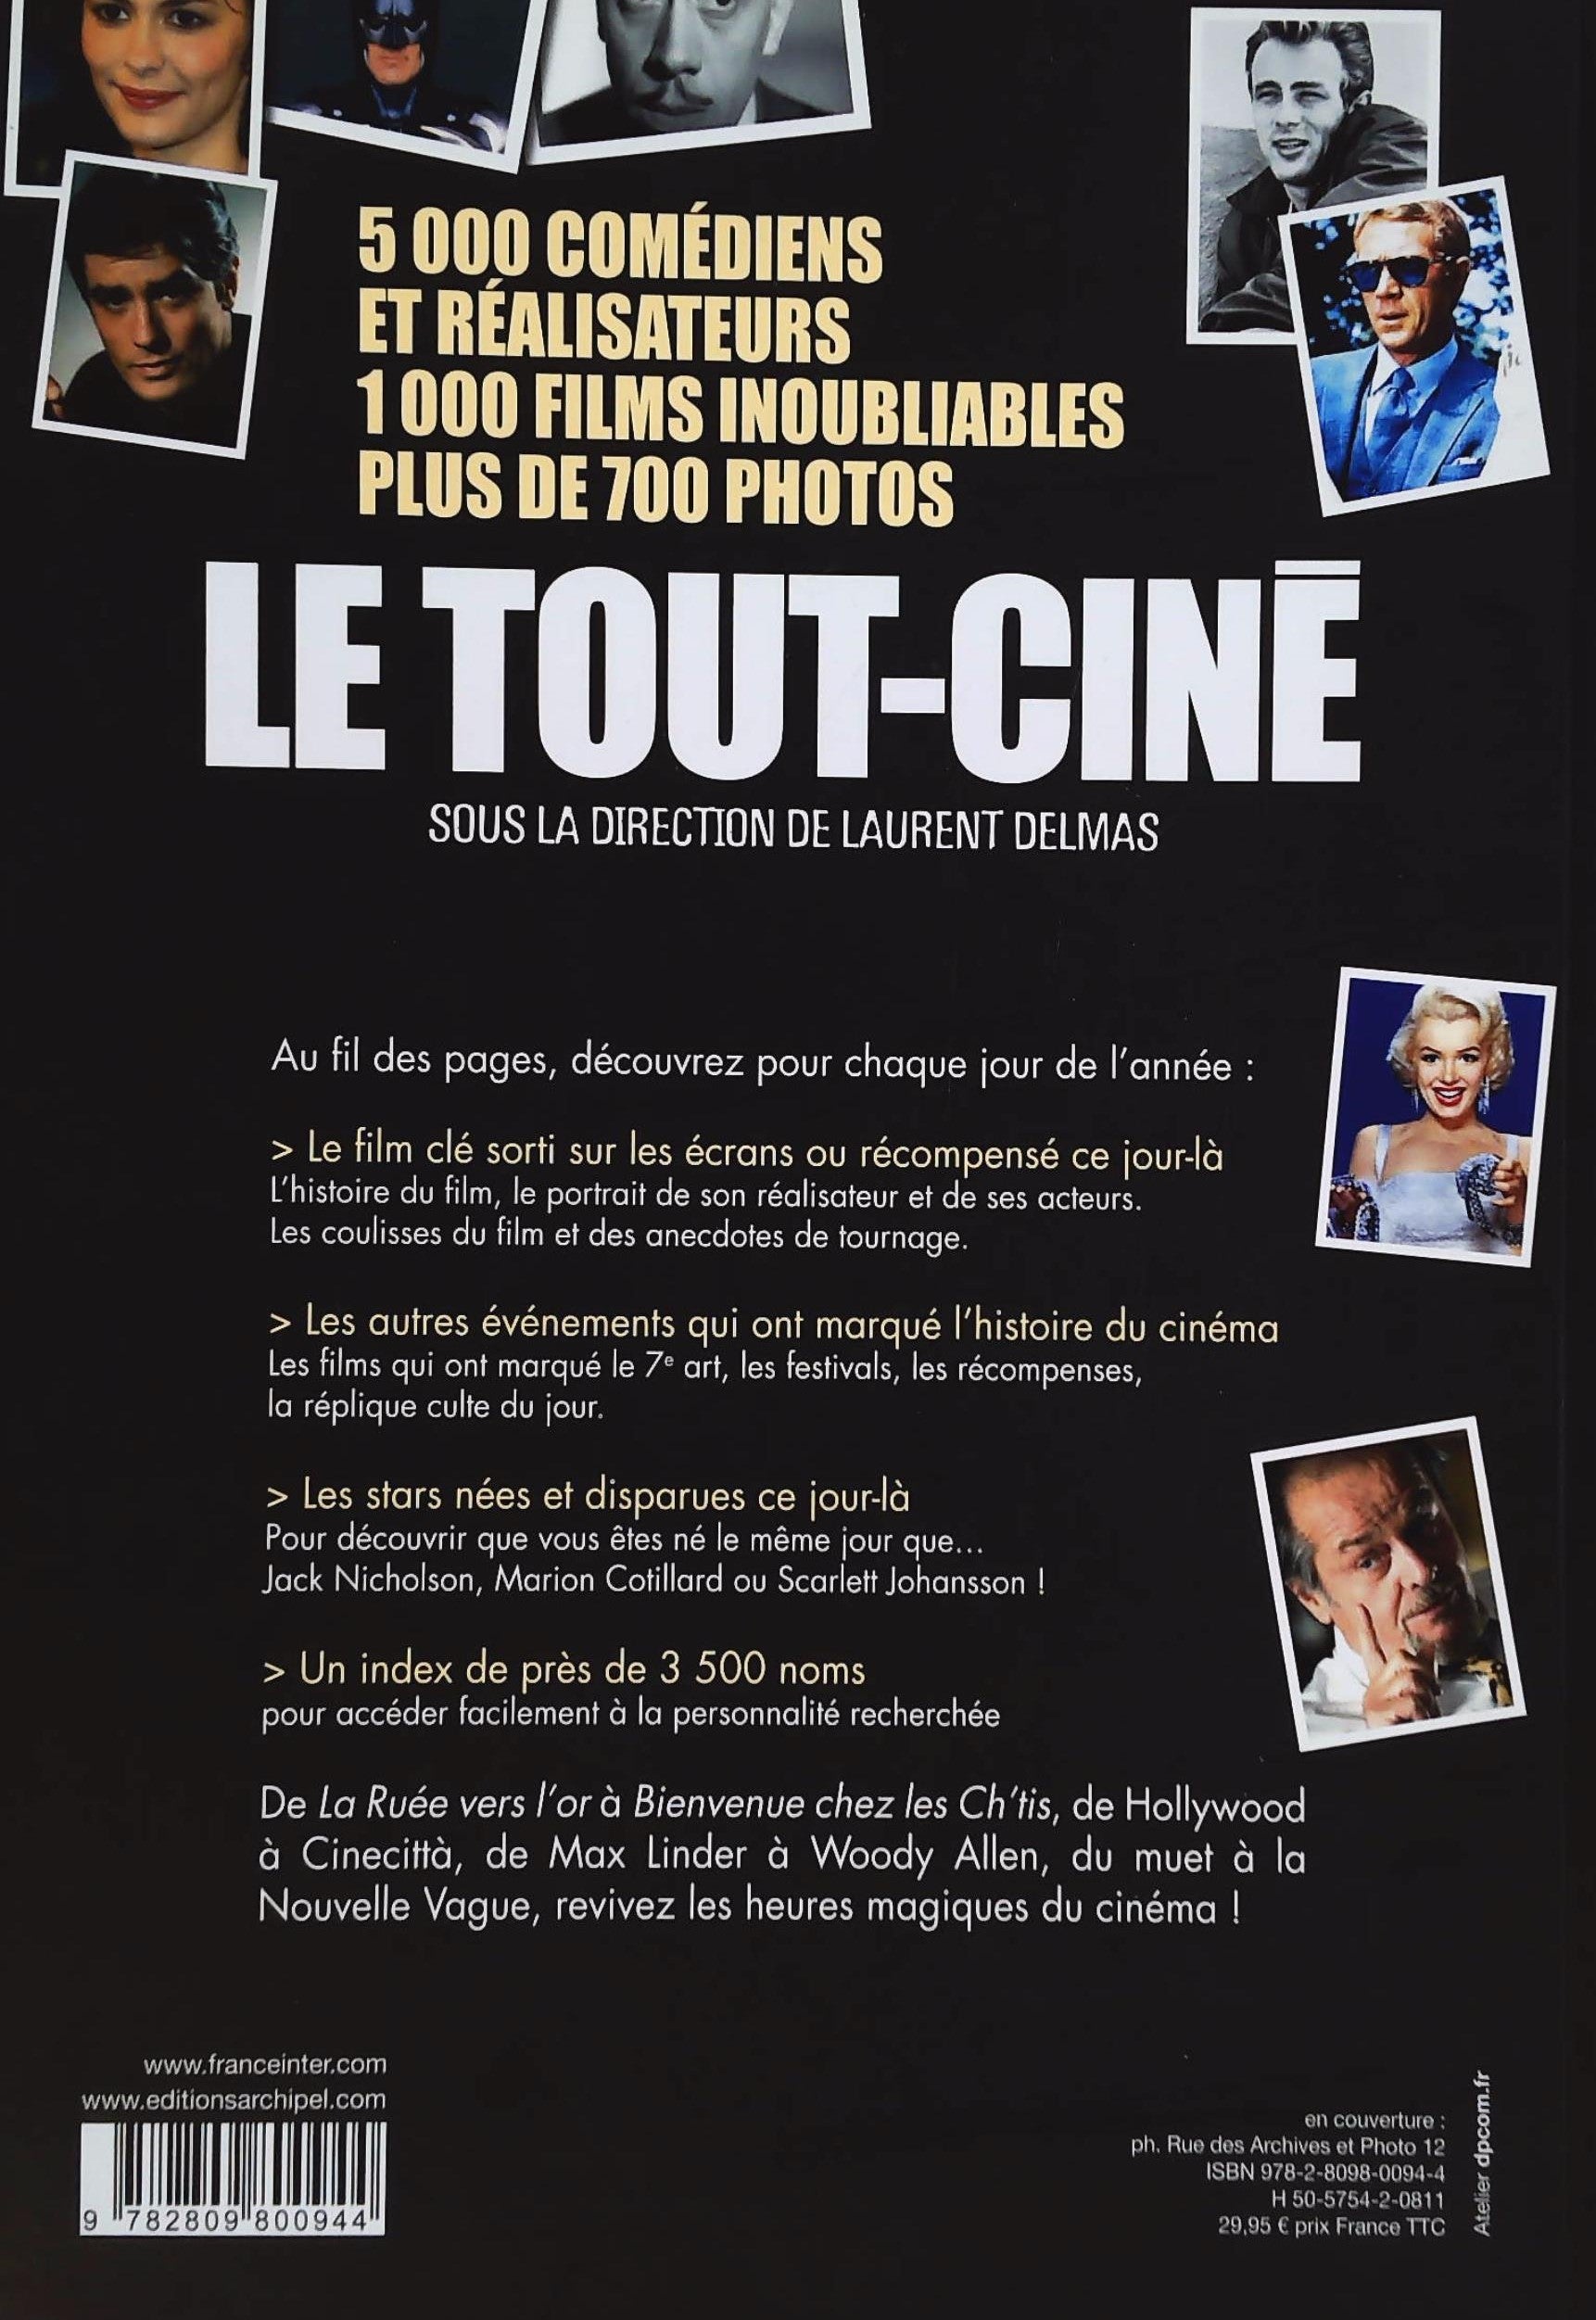 Le Tout-Ciné : 120 ans de films et de stars (Laurent Delmas)